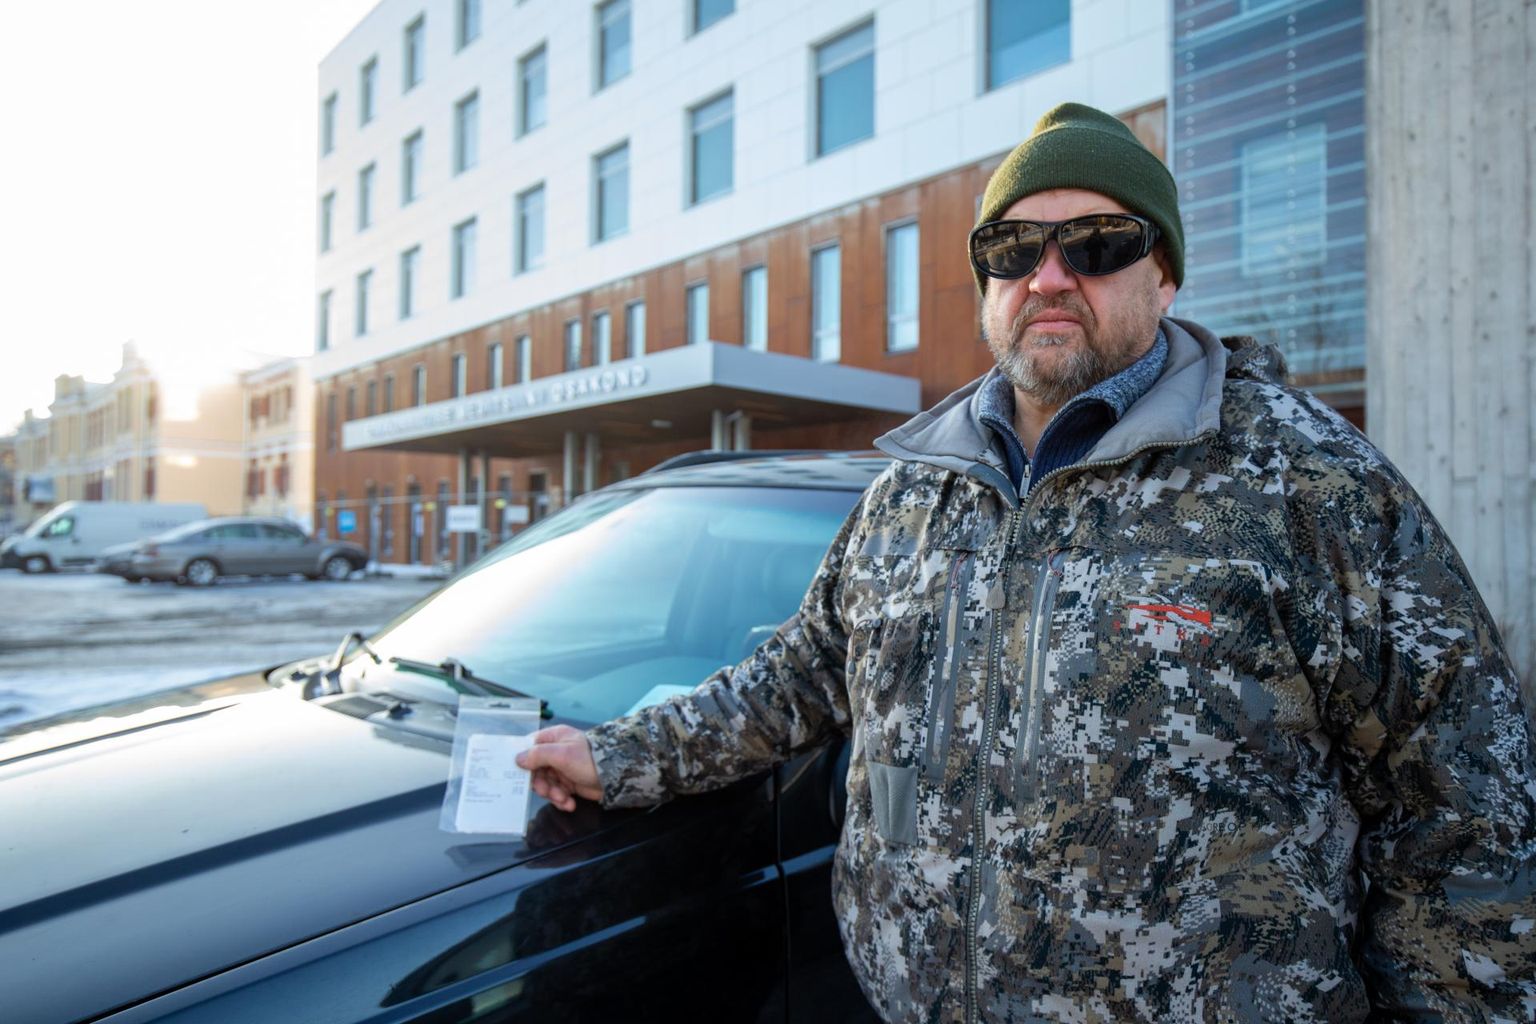 Тынис Нугис получил штраф за парковку перед входом EMO Клиники Тартуского университета.